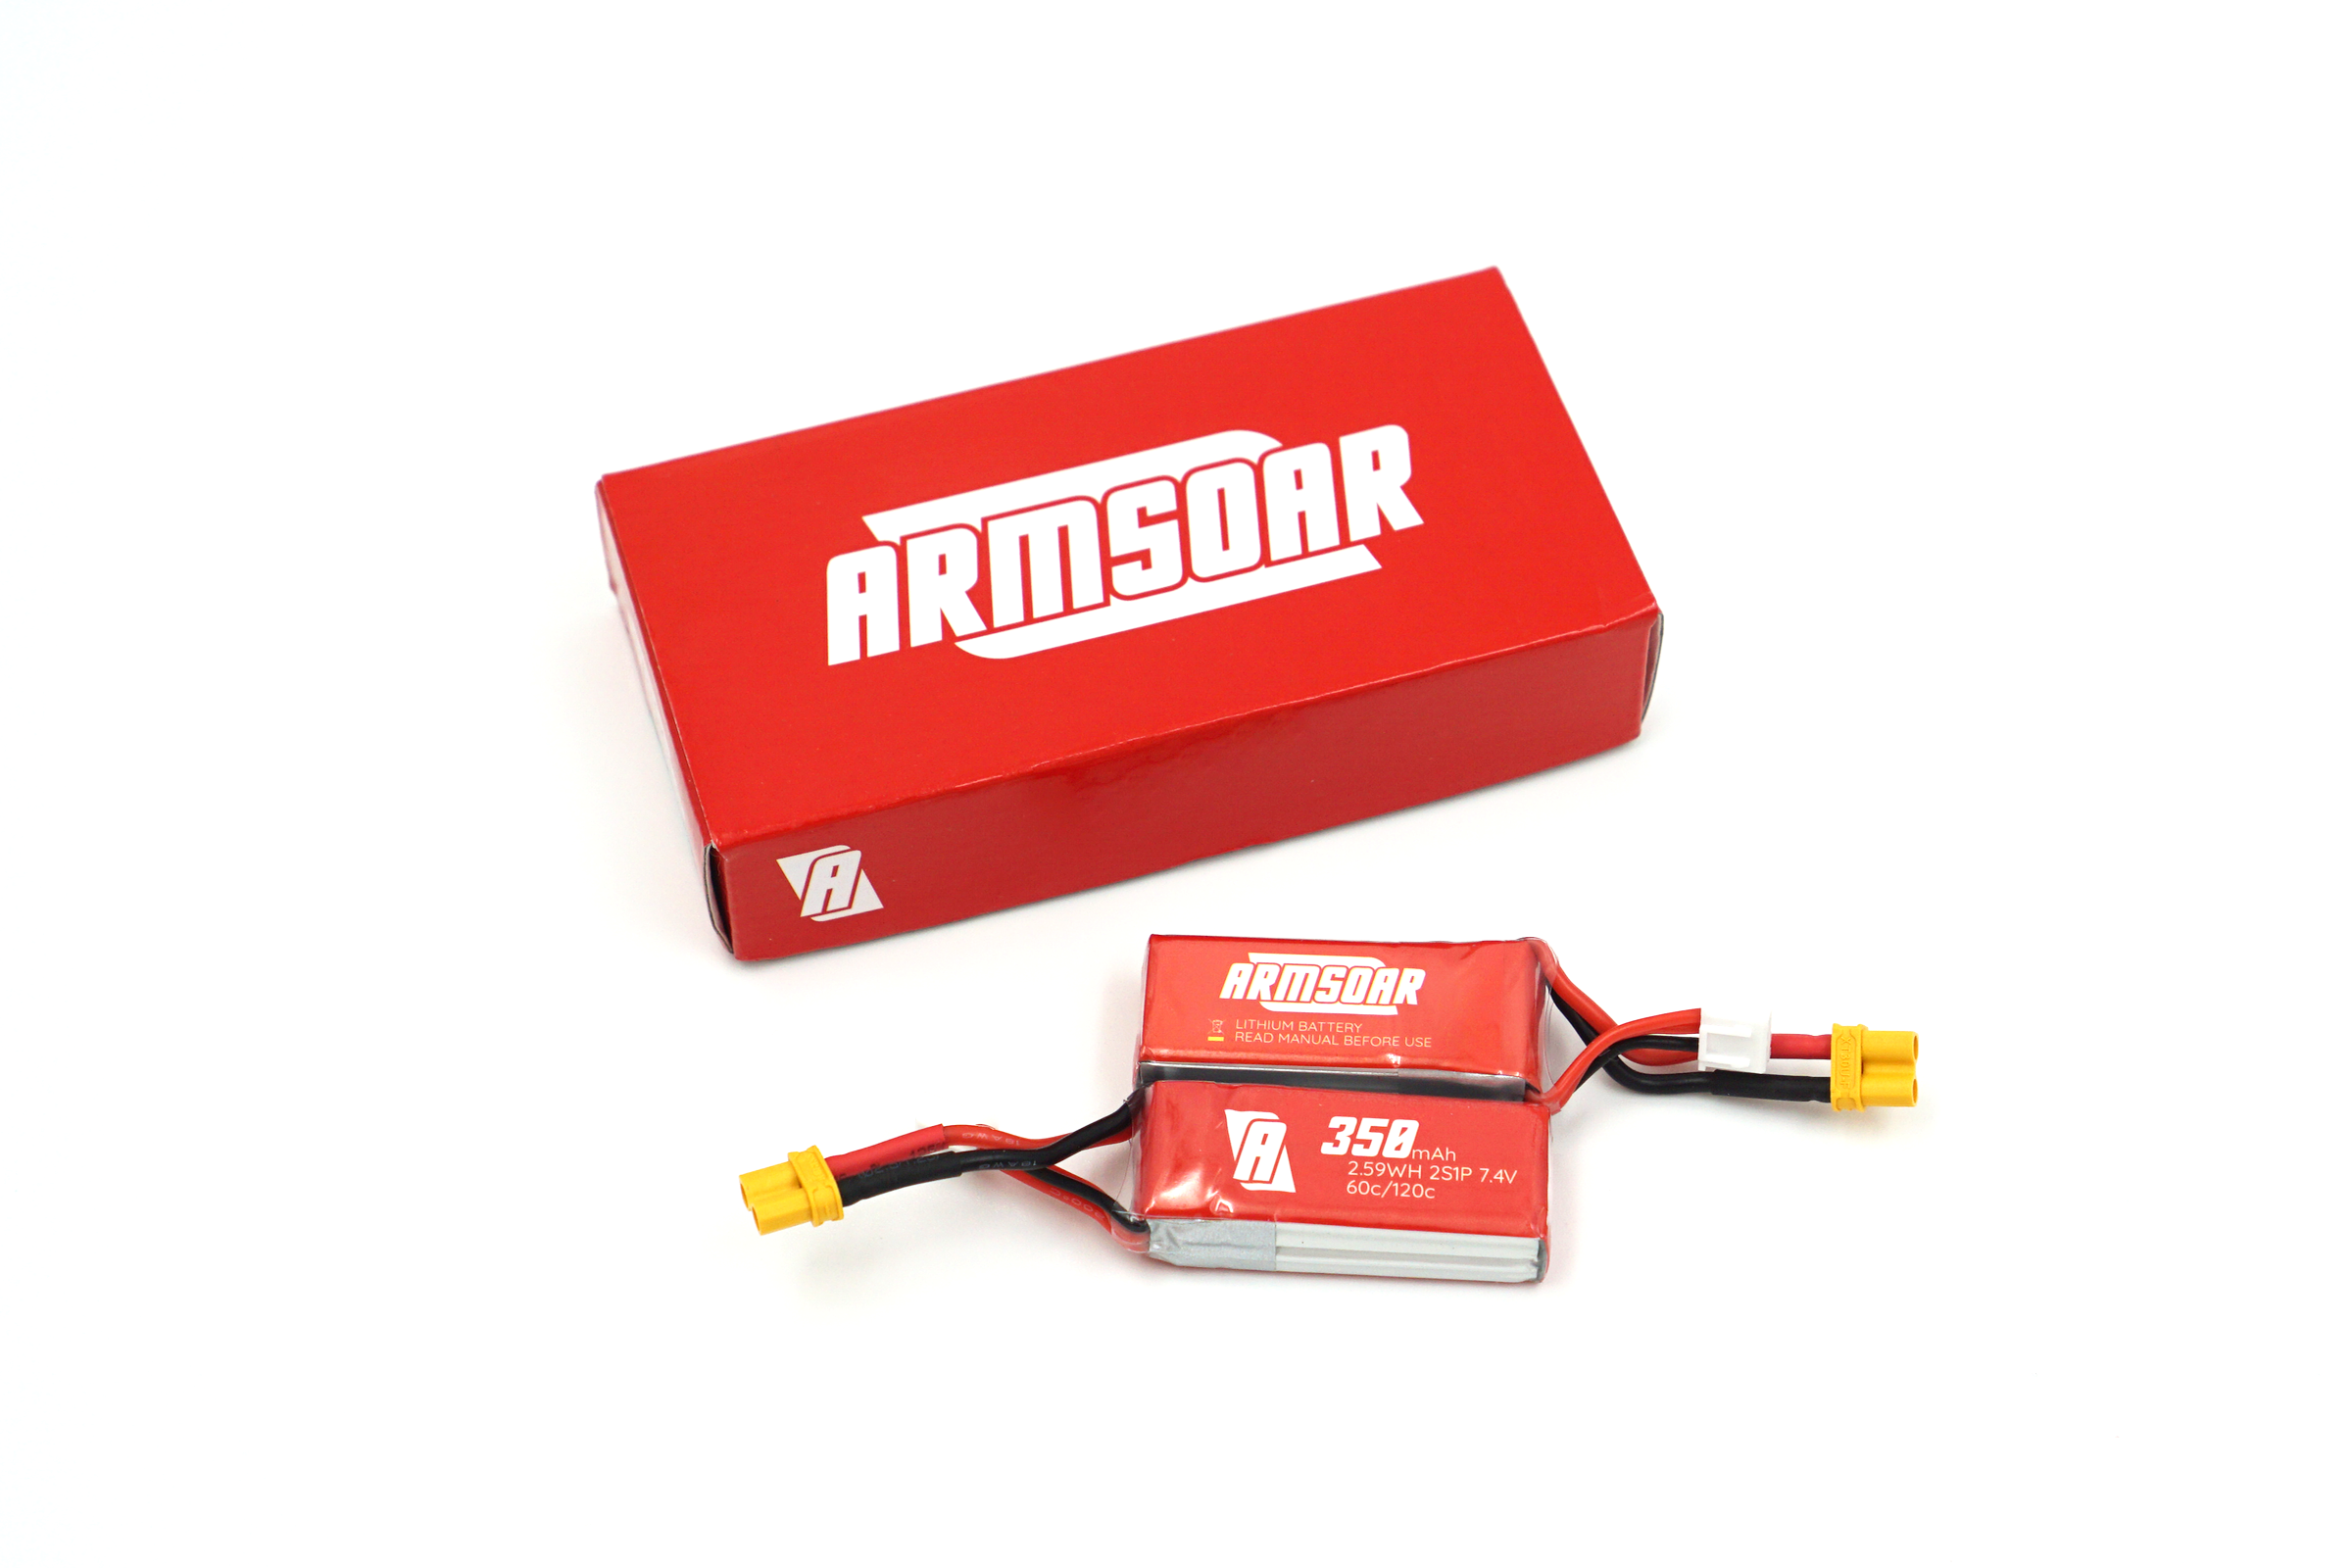 ArmSoar 2S 350 mAh 7.4V LiPo Battery (Pack of 2)